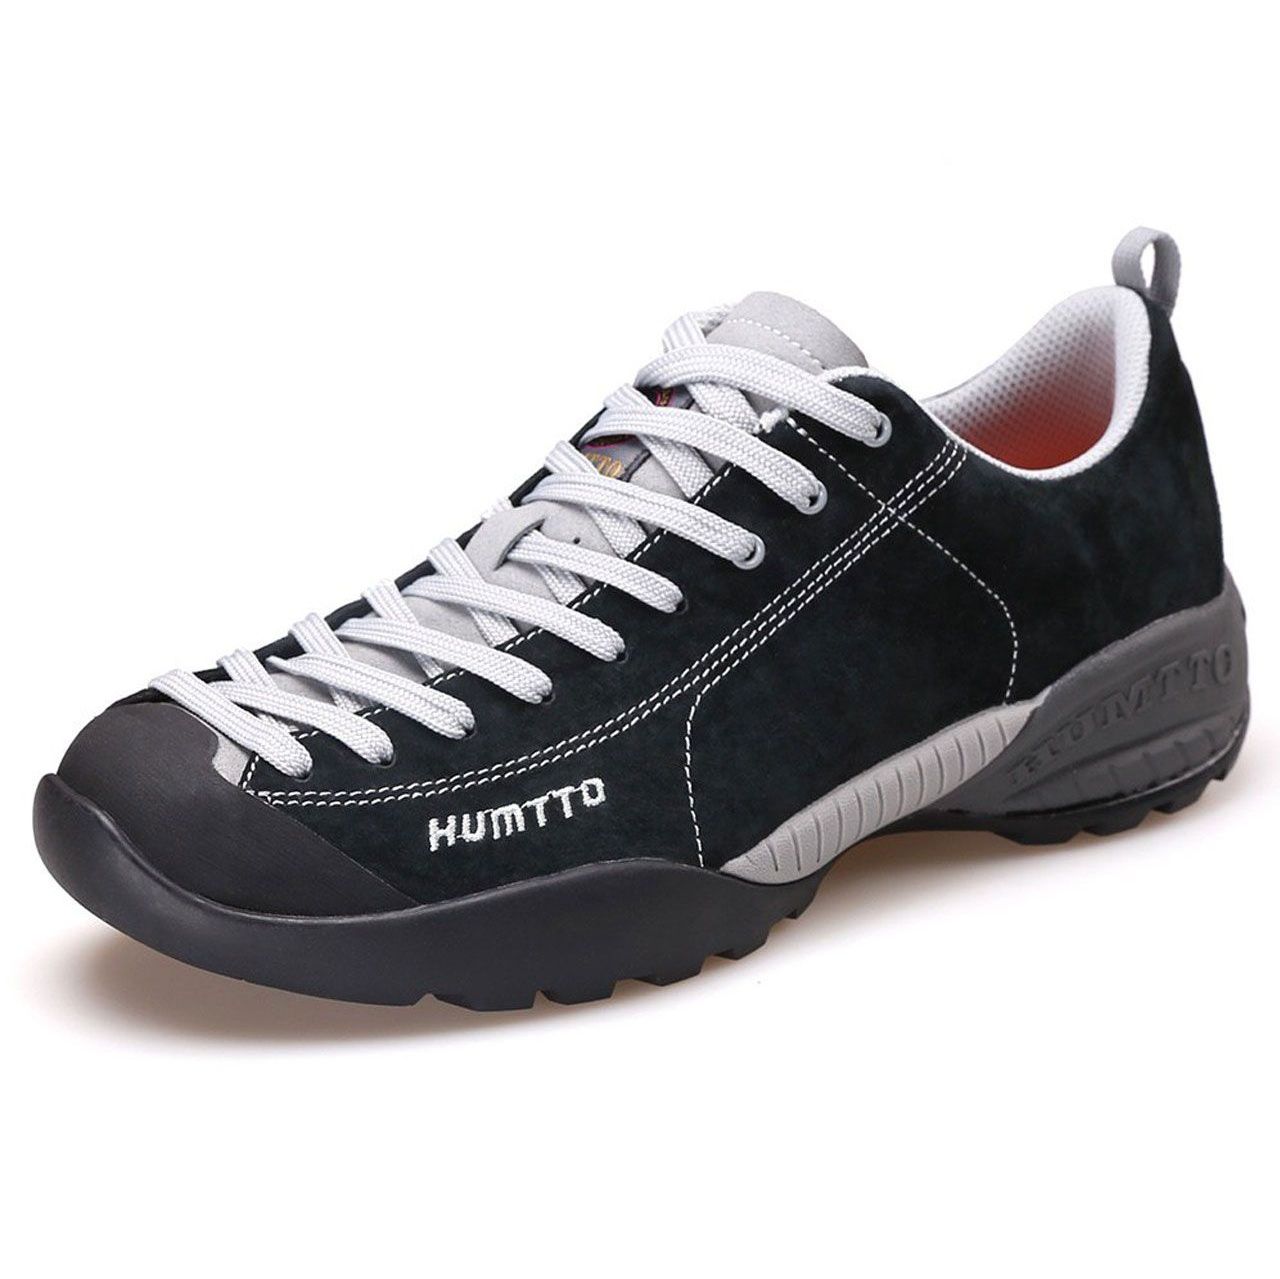 کفش مخصوص پیاده روی مردانه هامتو کد 110030A-1 -  - 3